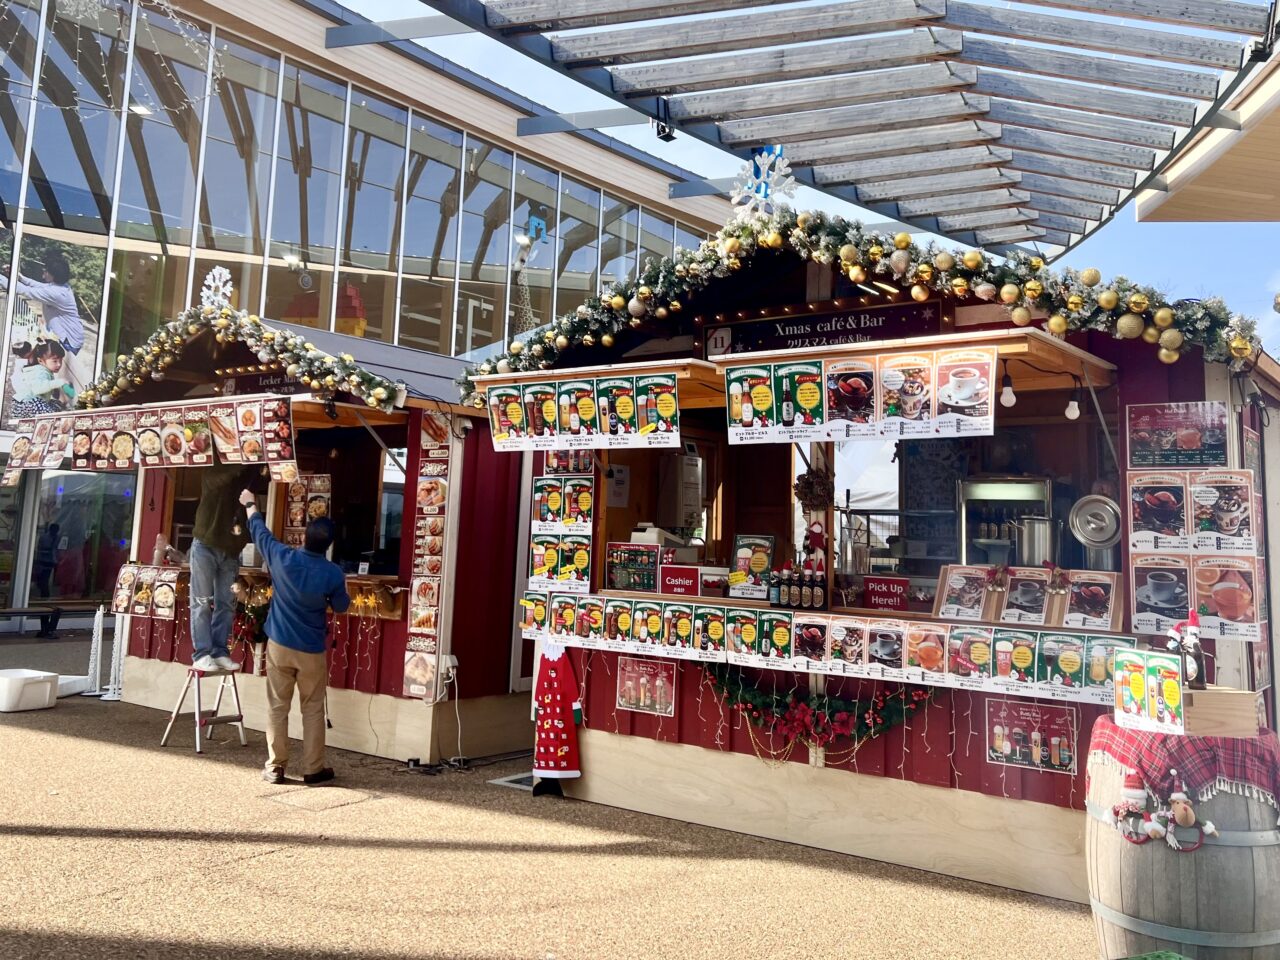 天王寺公園(てんしば)で開催されている「大阪クリスマスマーケットの飲食店のグルメメニューです。クリスマスcafe&bar/リッカーマルクト